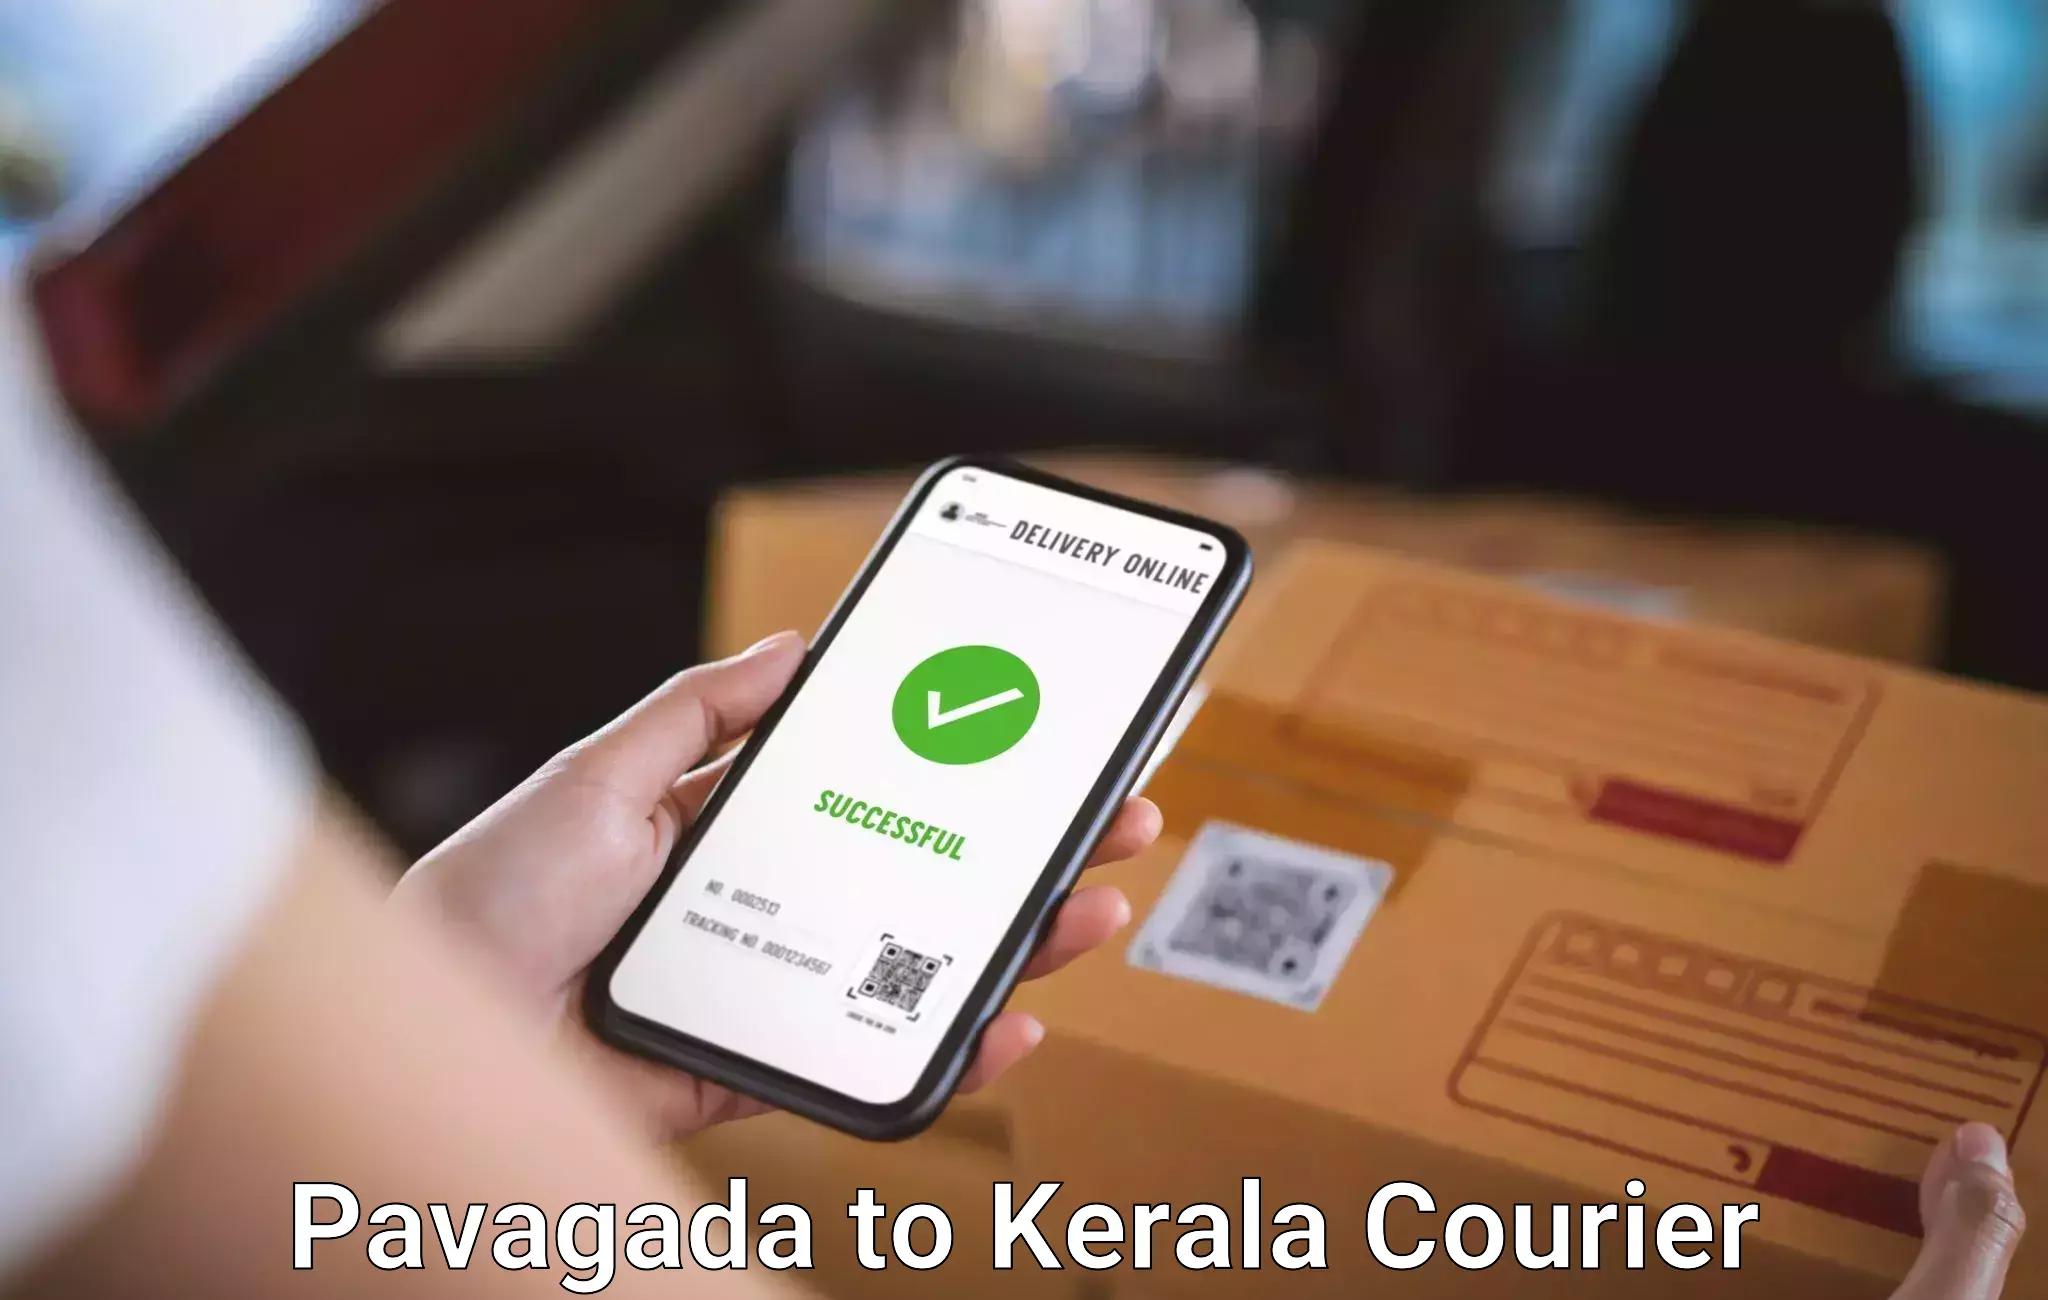 Luggage transfer service Pavagada to Kerala